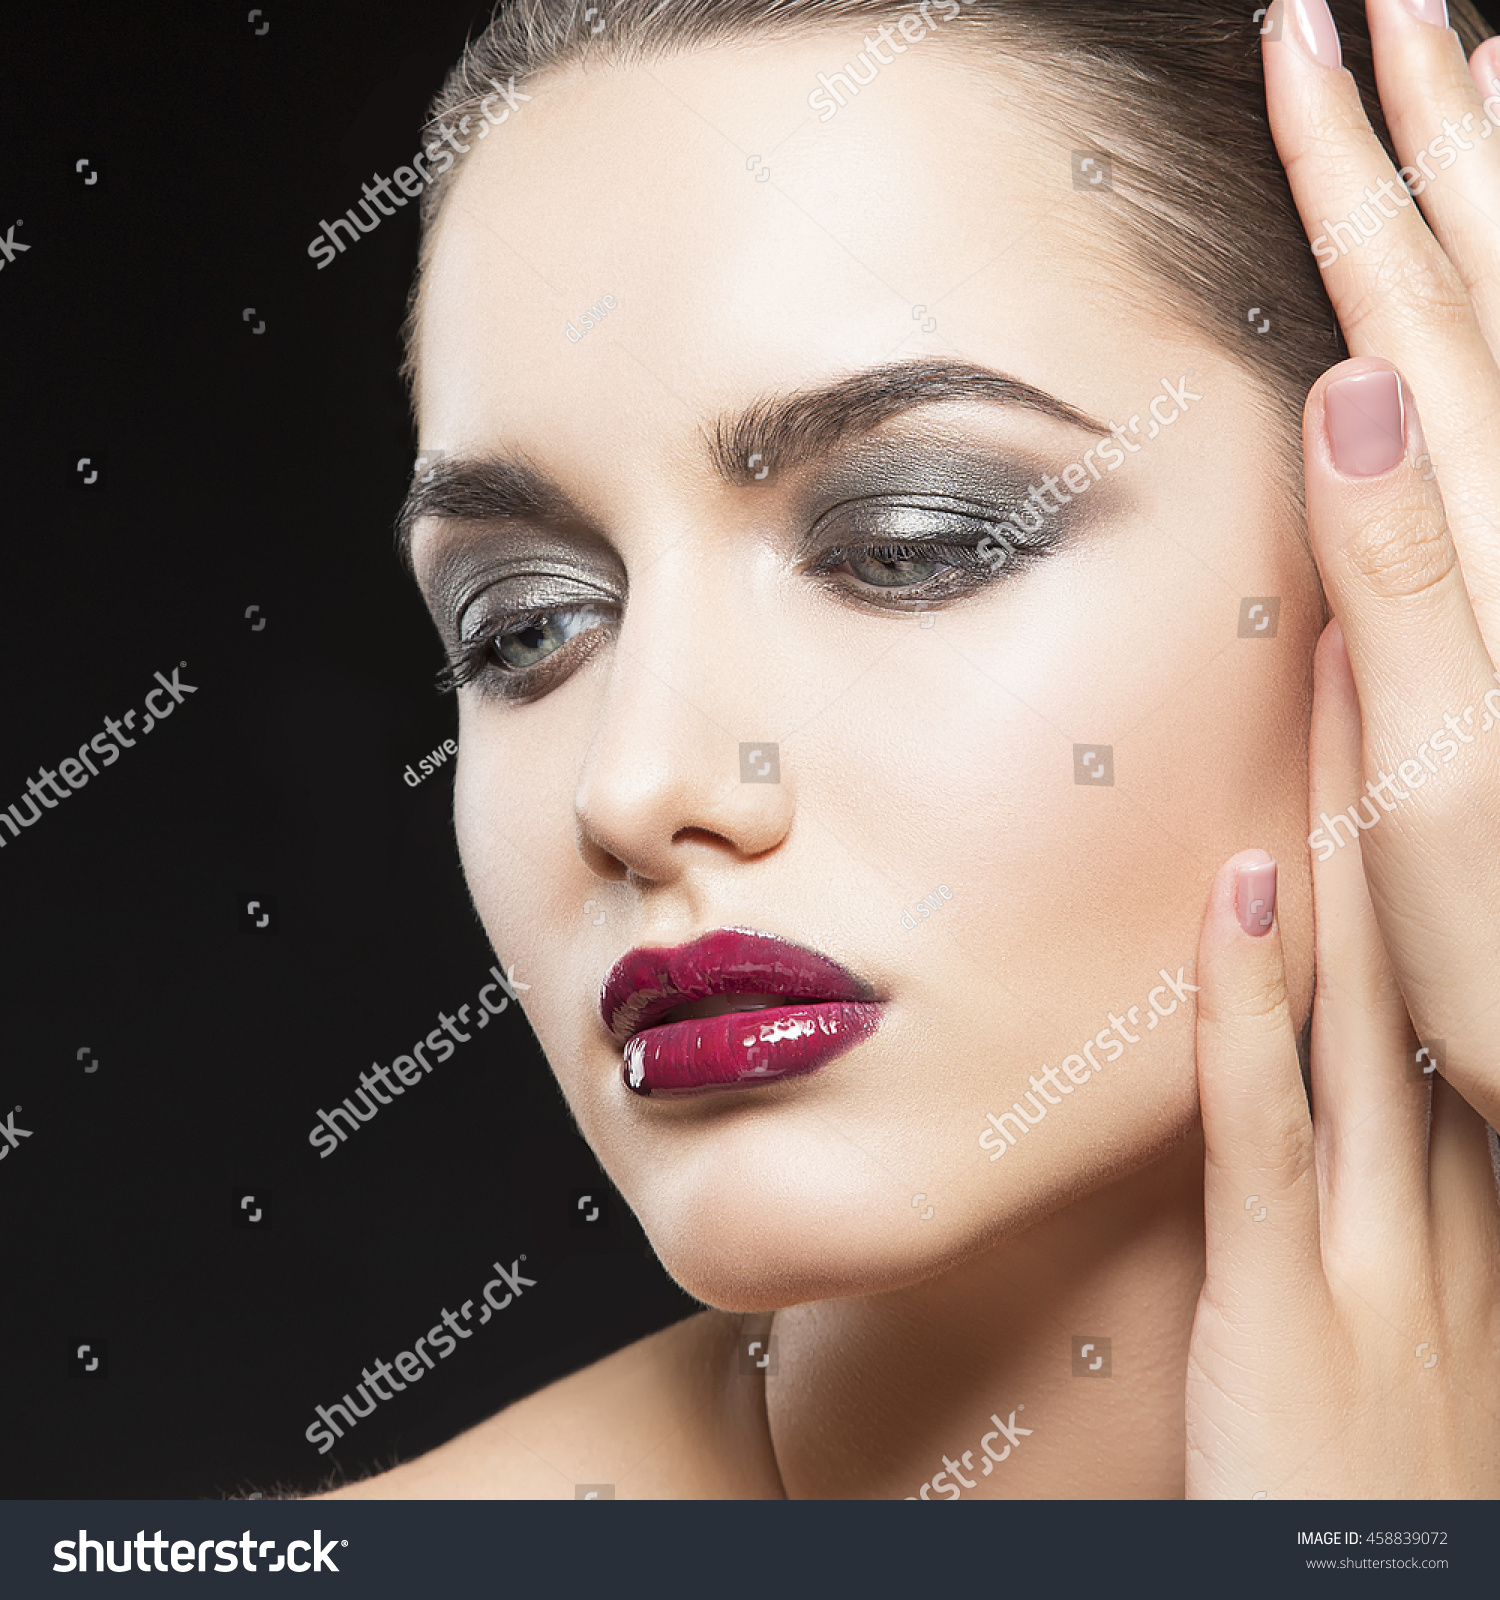 Beauty Fashion Portrait Caucasian Brunette Woman Stock Photo ...